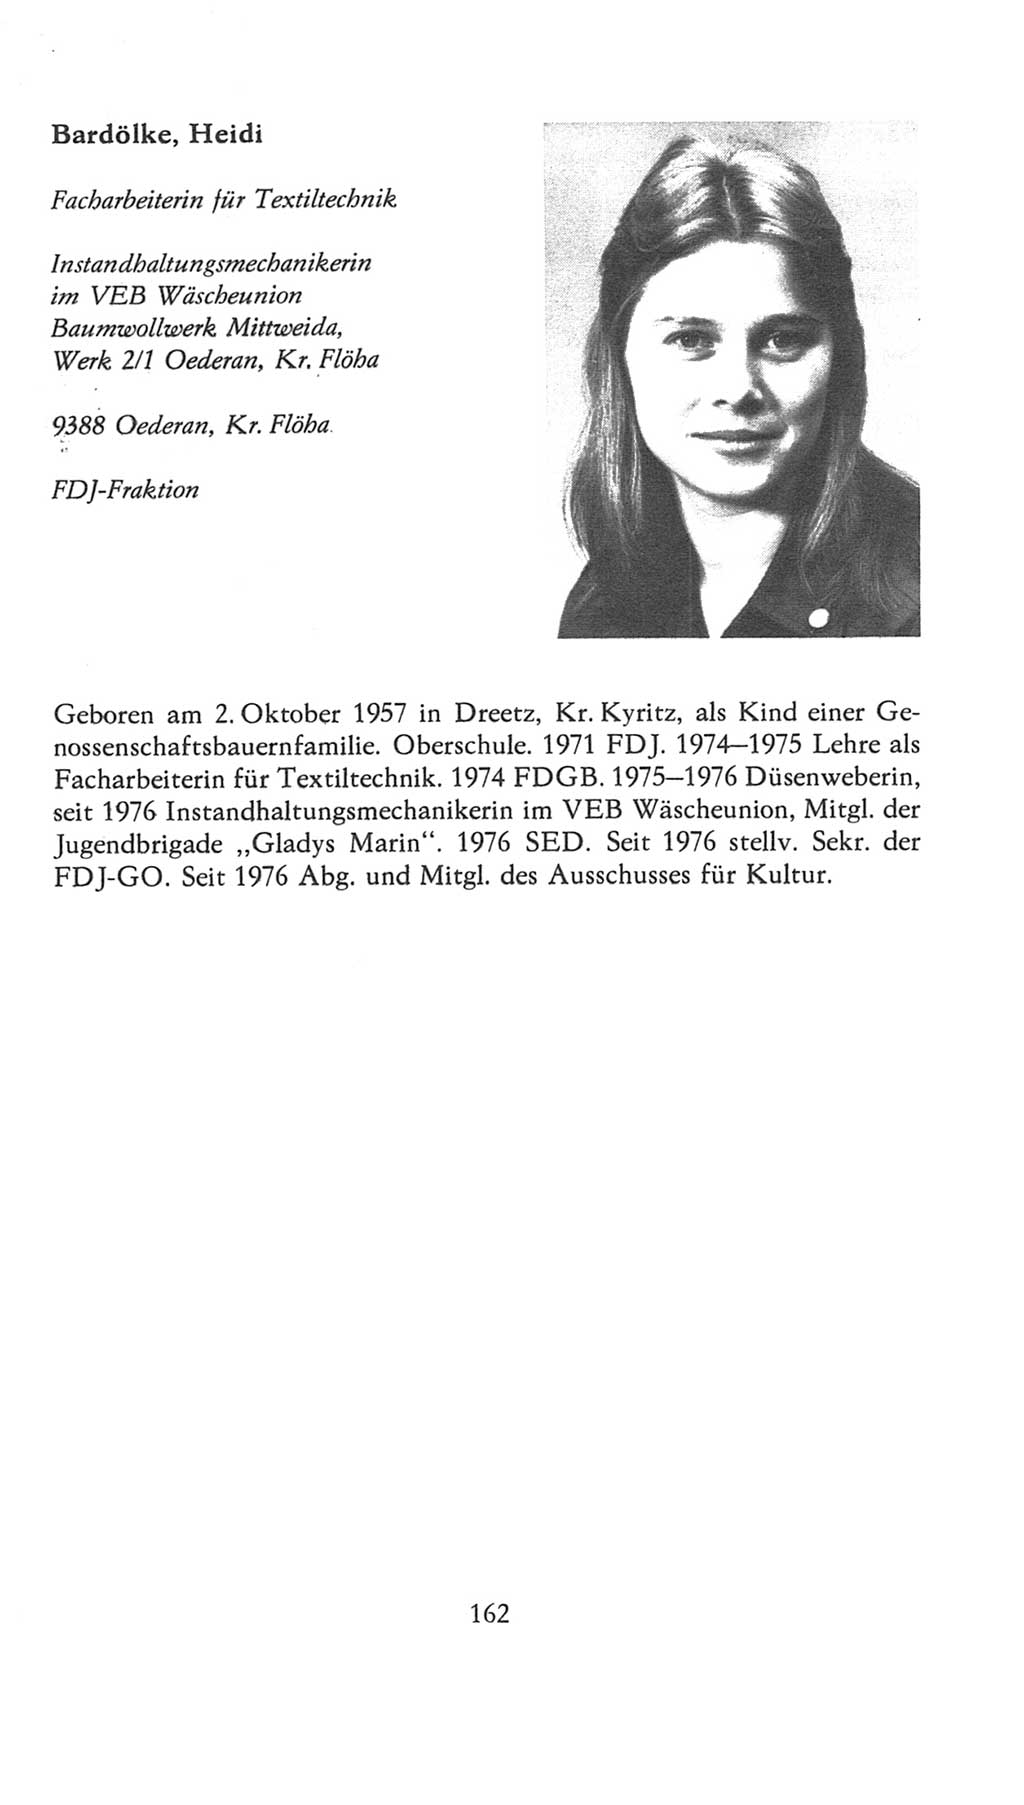 Volkskammer (VK) der Deutschen Demokratischen Republik (DDR), 7. Wahlperiode 1976-1981, Seite 162 (VK. DDR 7. WP. 1976-1981, S. 162)